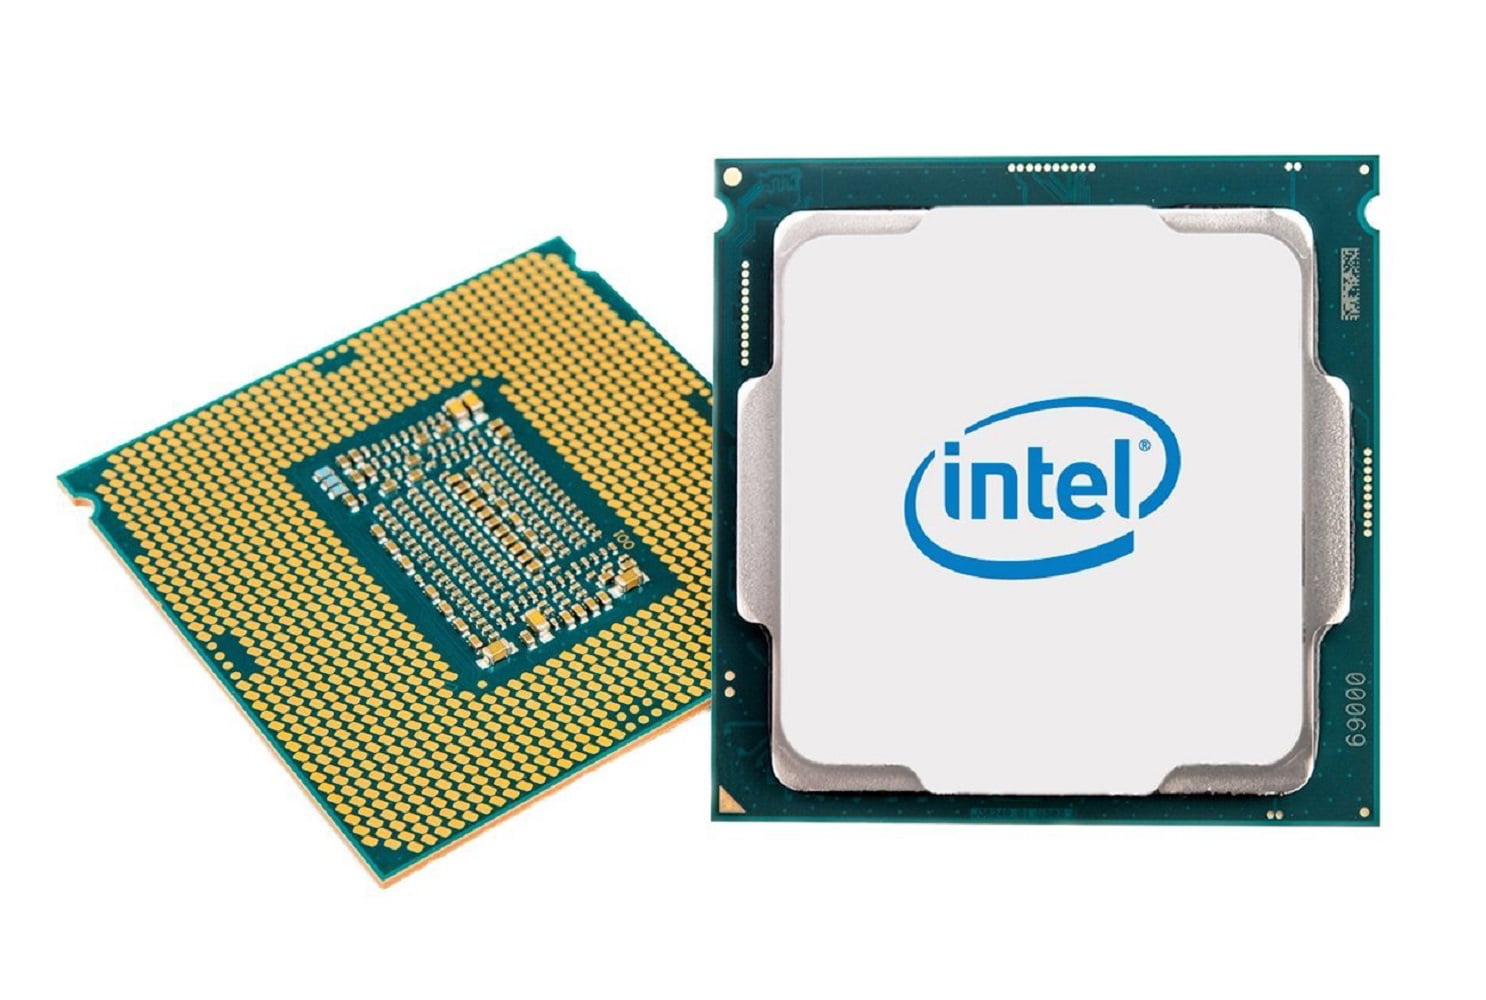 Модели интел. Процессор Intel Celeron g5905, LGA 1200, OEM. Процессор Intel Core i3-10105f. Процессор Intel Celeron g5905 Box. Intel Core i5-9600kf.